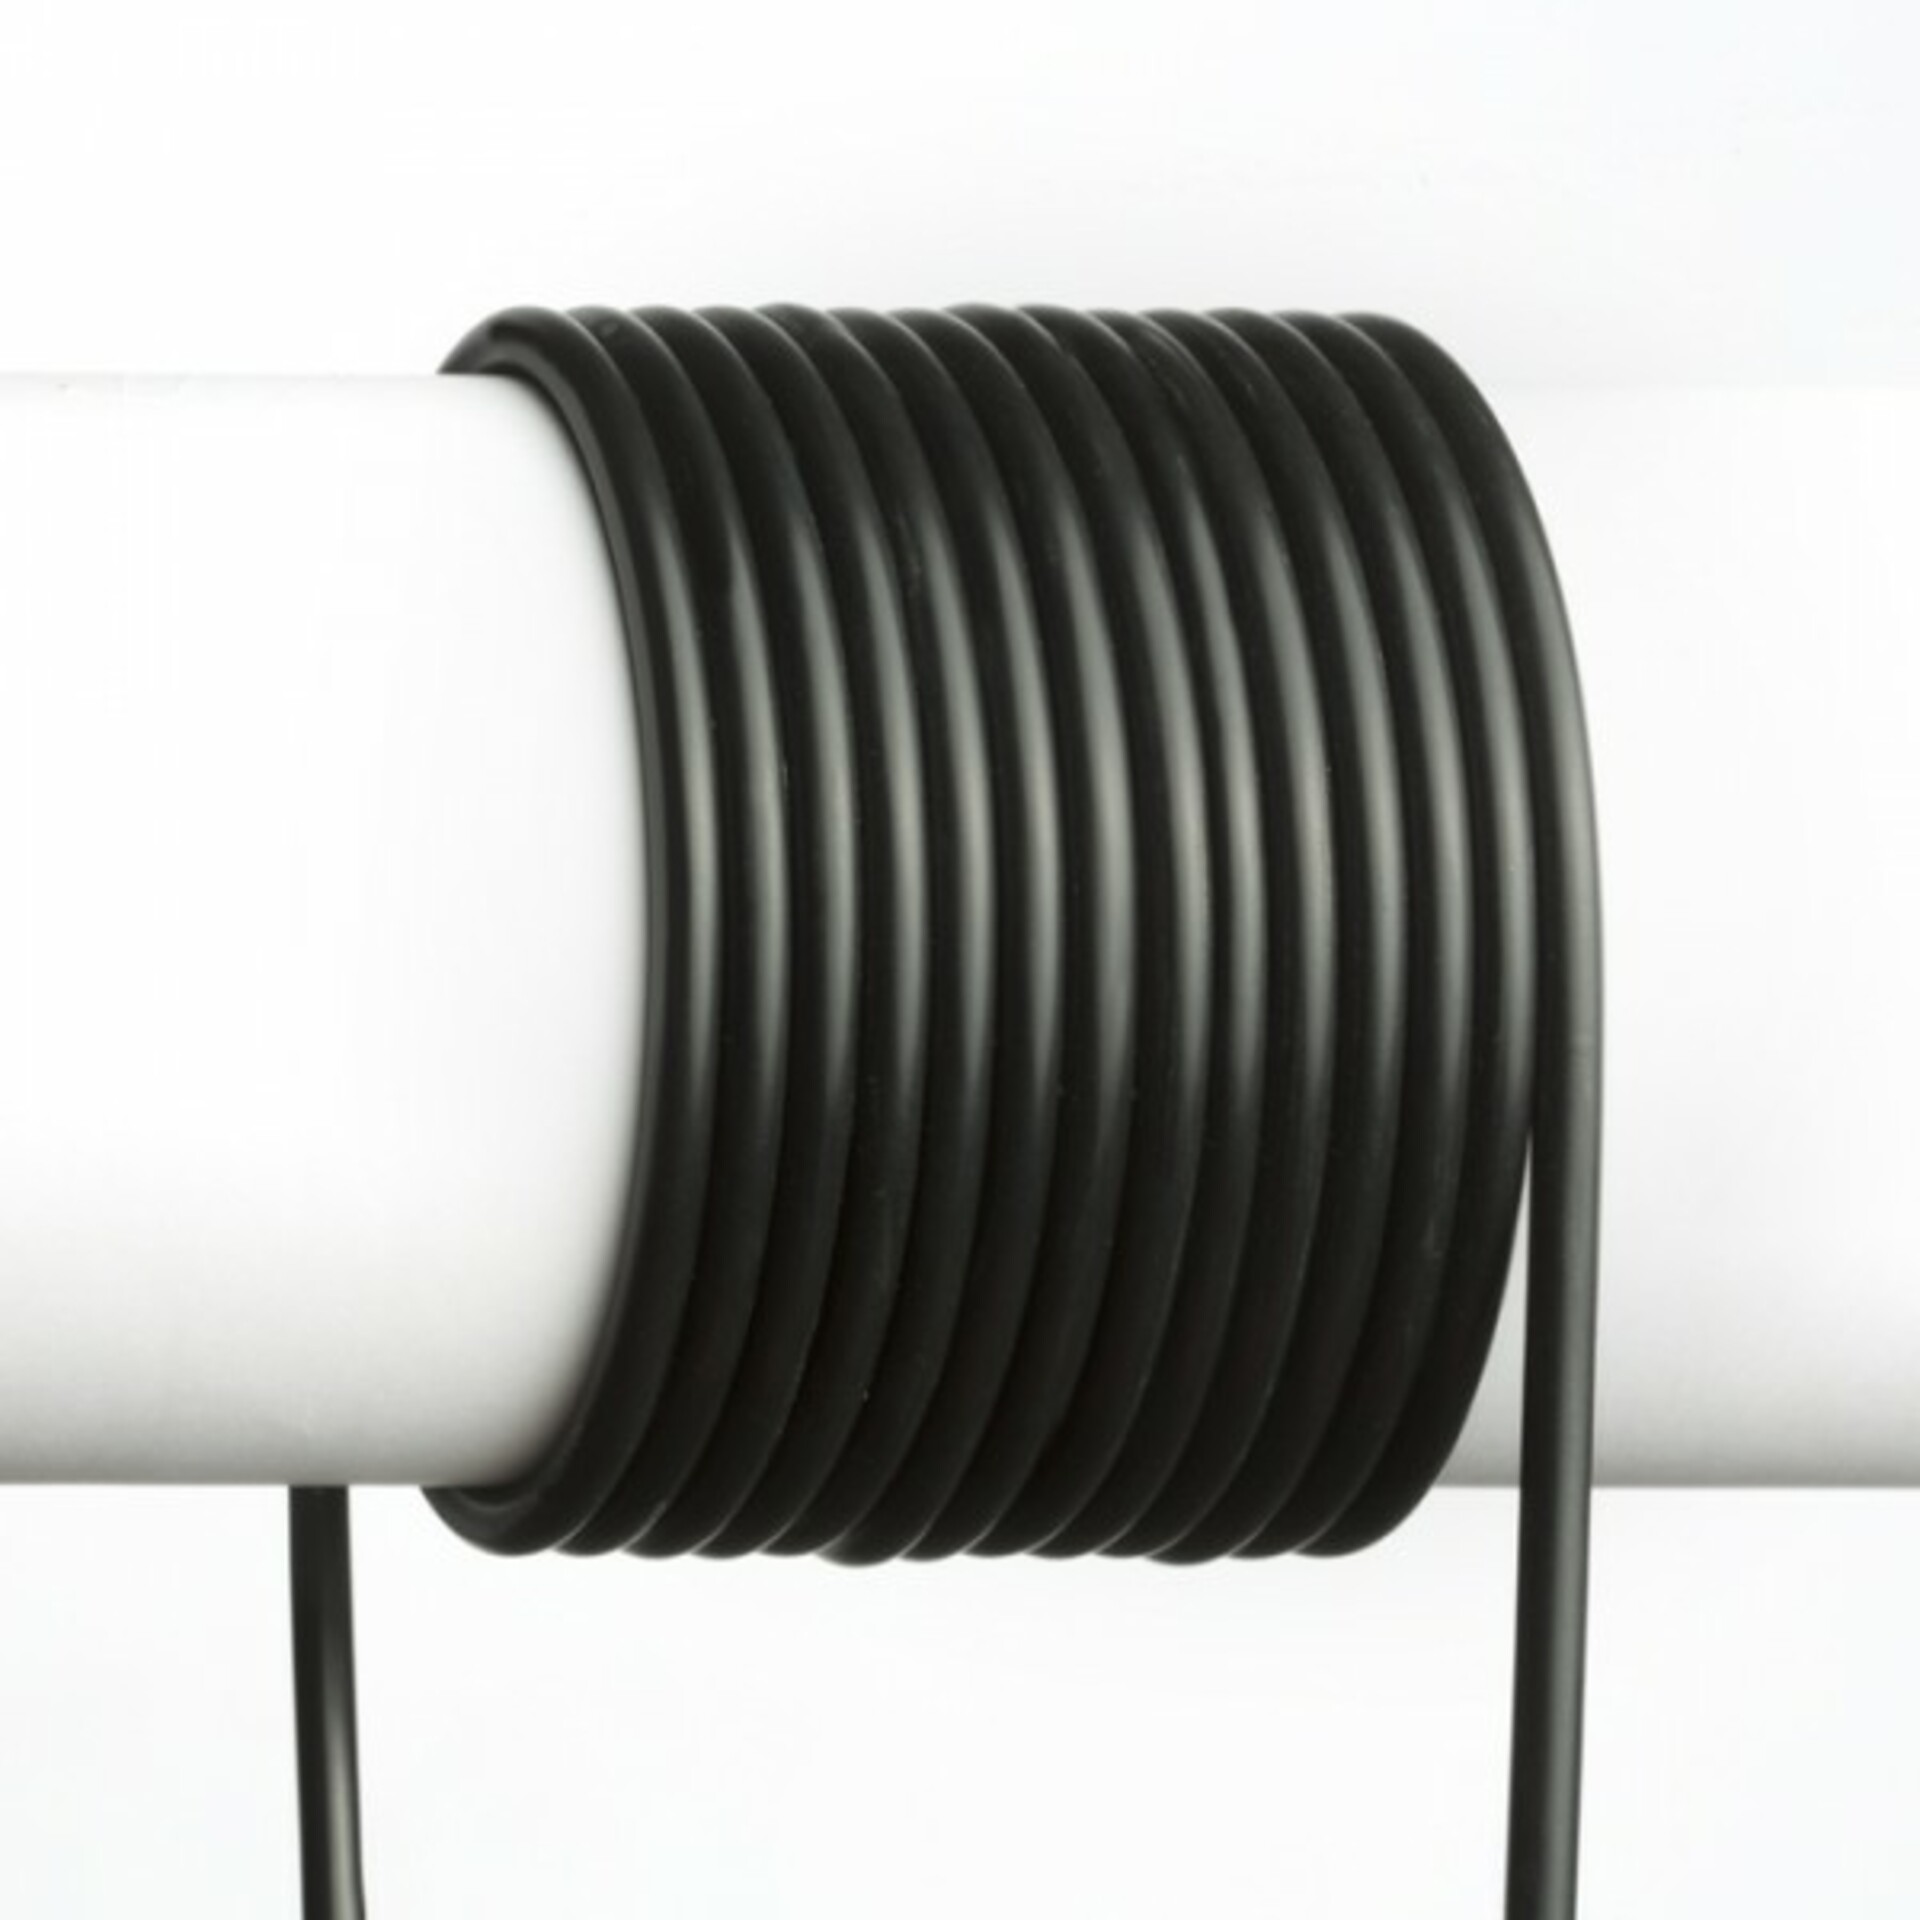 RED - DESIGN RENDL RENDL FIT 3X0,75 1bm kabel černá  R12230